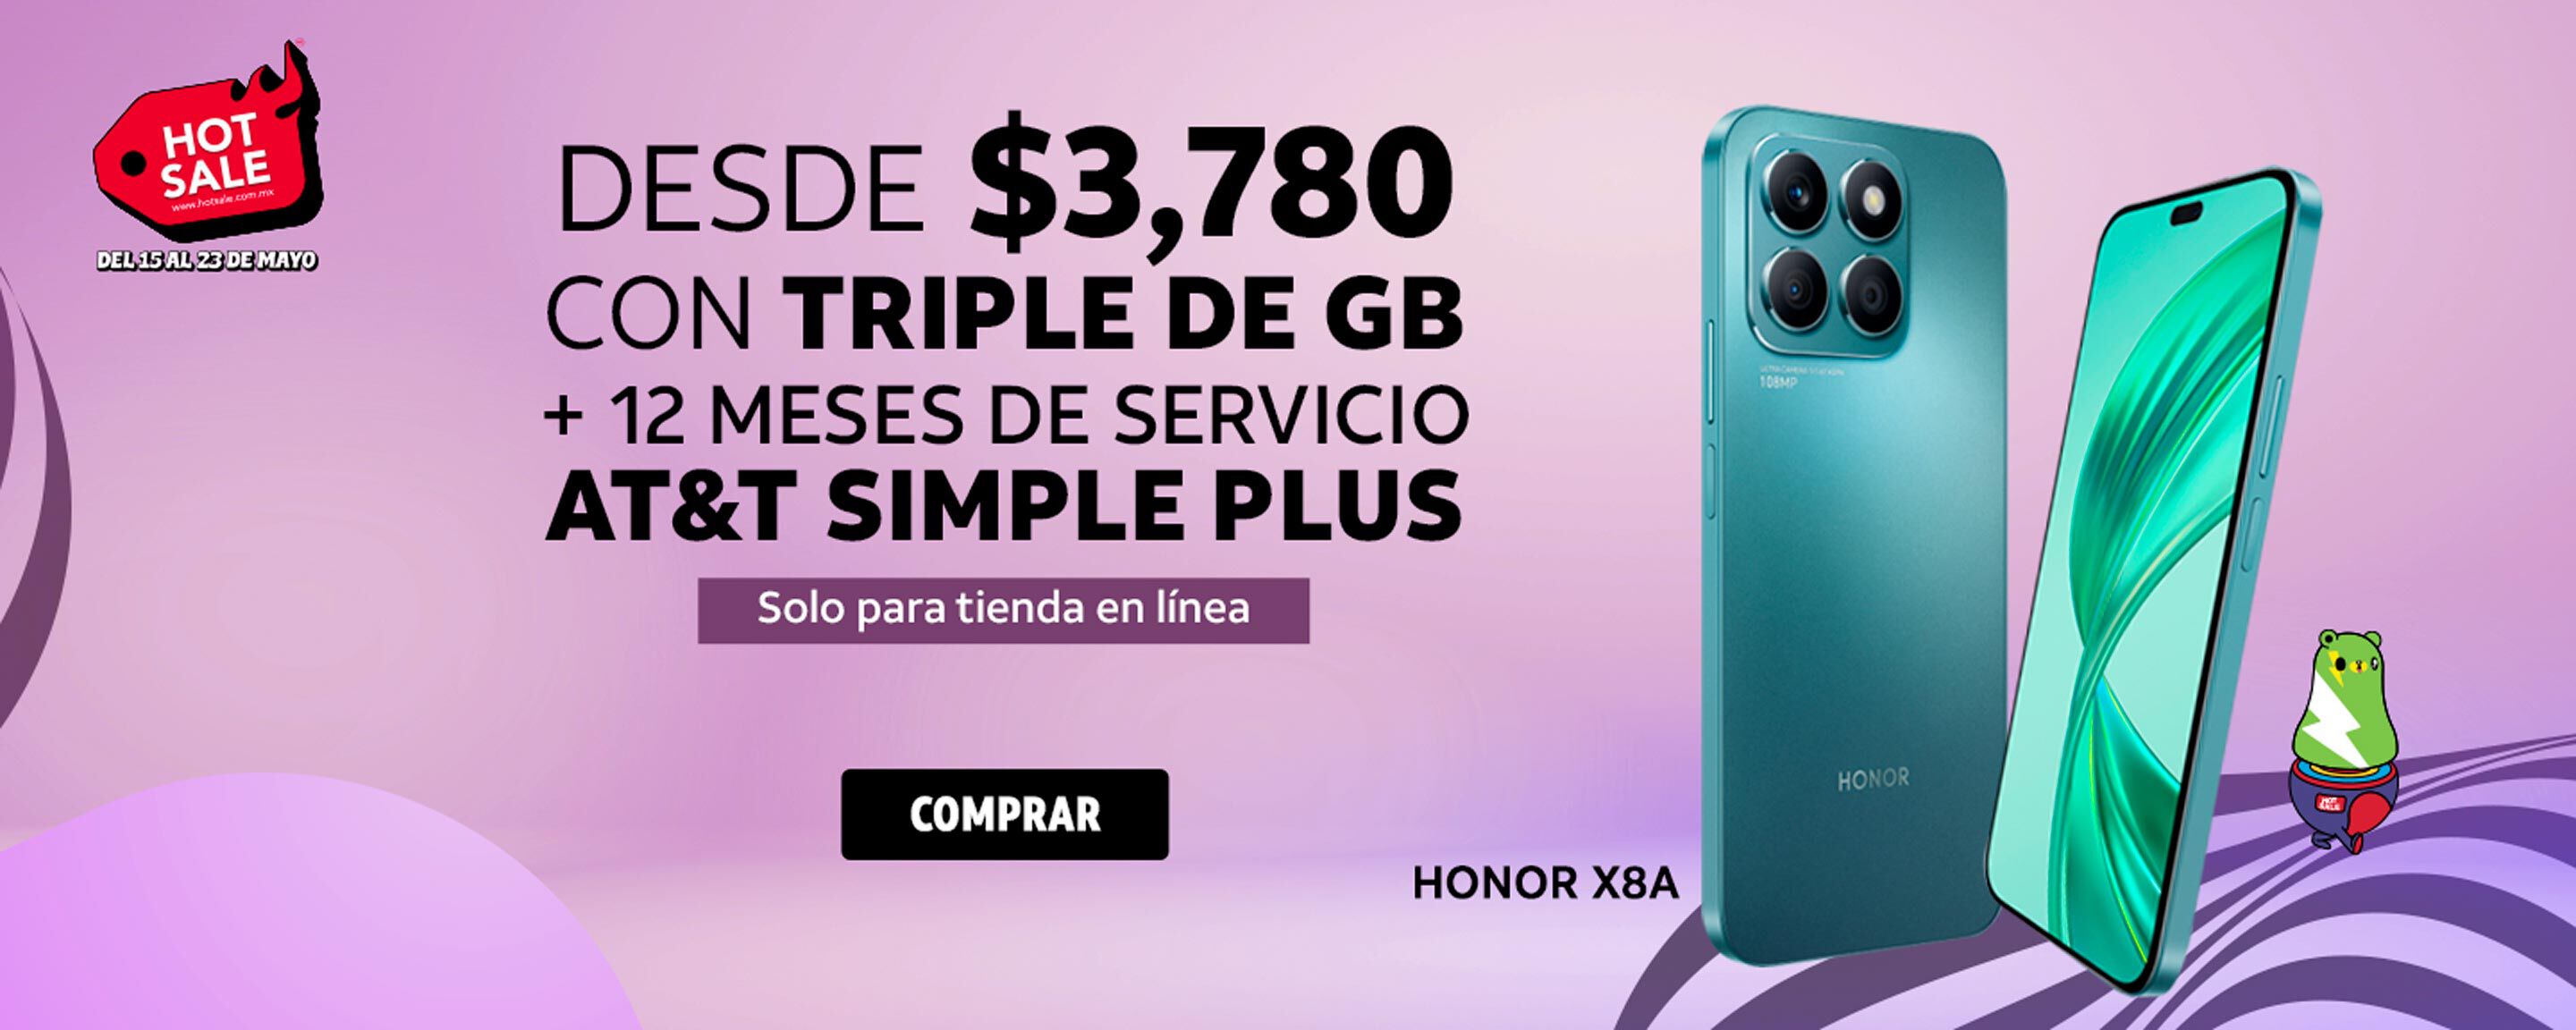 Honor X8A DESDE $3,780 CON TRIPLE DE GB + 12 MESES DE SERVICIO AT&T SIMPLE PLUS